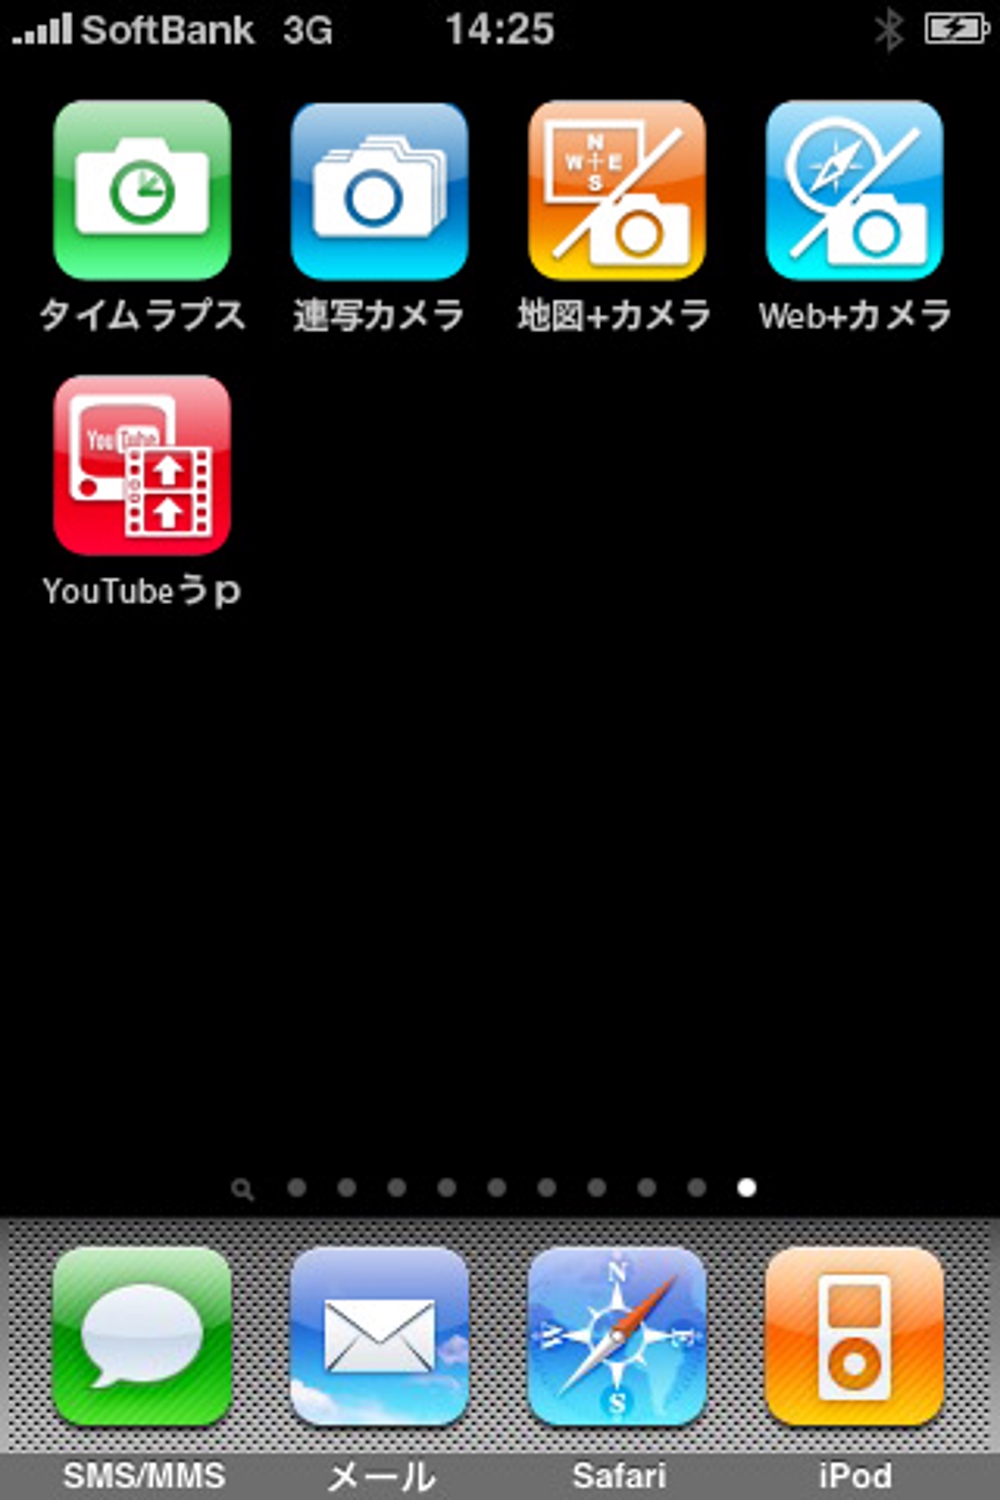 【Youtubeへ動画をアップロードするアプリ】iPhoneアプリケーション用アイコン作成